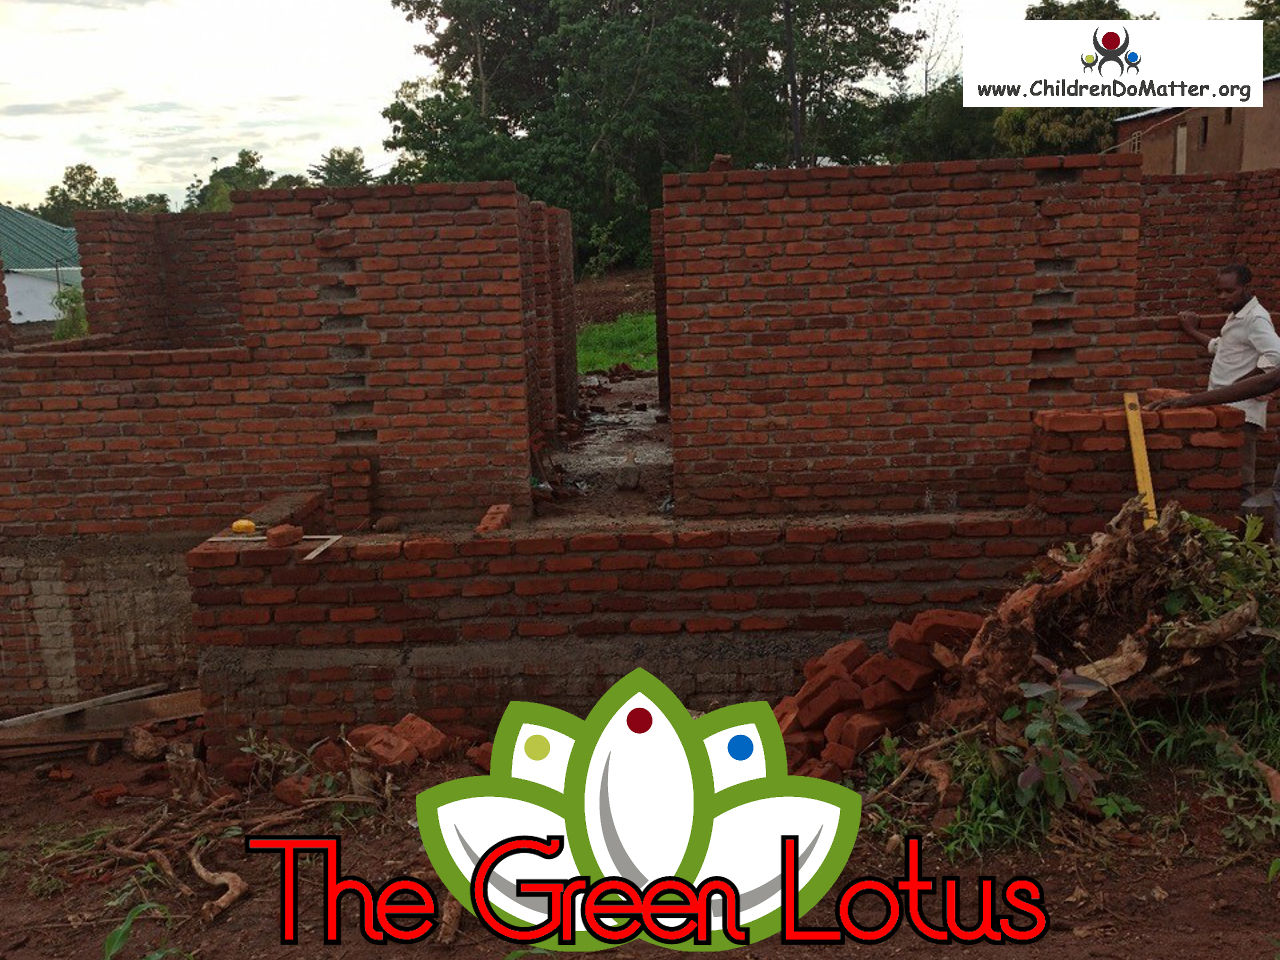 costruzione dell'orfanotrofio casa di accoglienza the green lotus a blantyre malawi - children do matter - 14